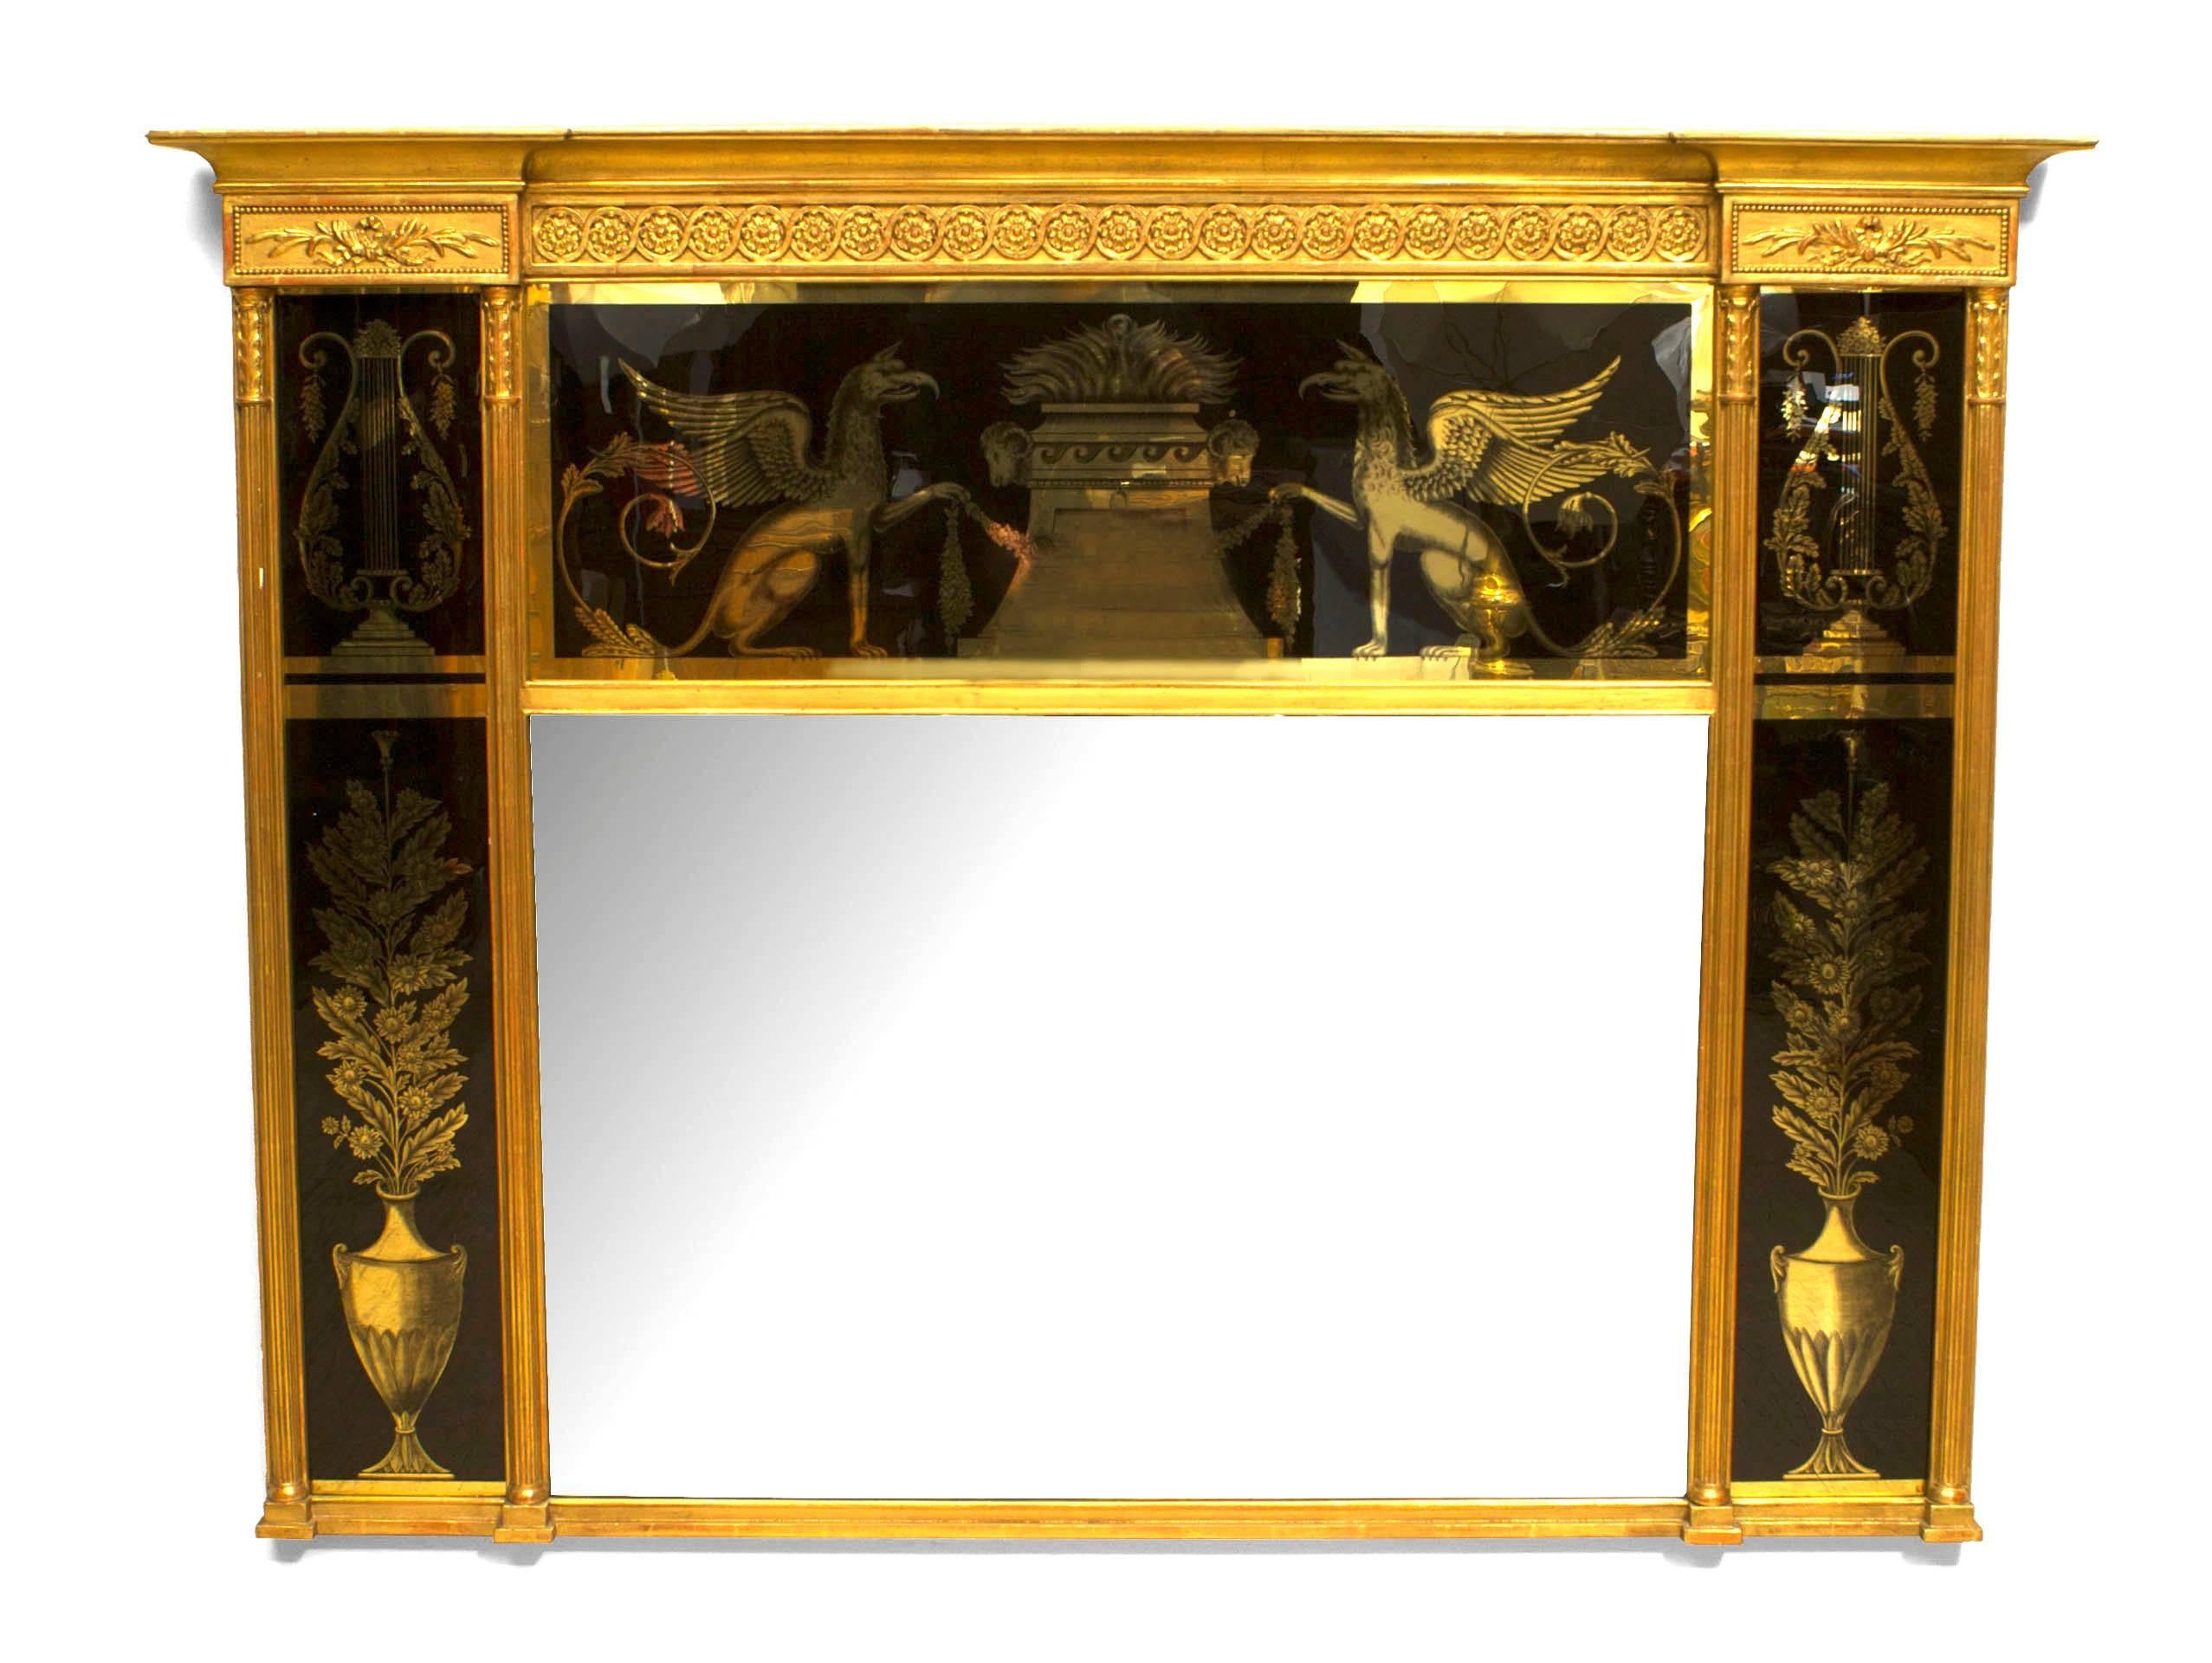 Italienischer Wandspiegel aus geschnitztem Goldholz im neoklassischen Stil (19. Jh.) mit schwarz und gold verzierten Rückseitengläsern mit Urnen, Greifen und Lyra-Motiven.
